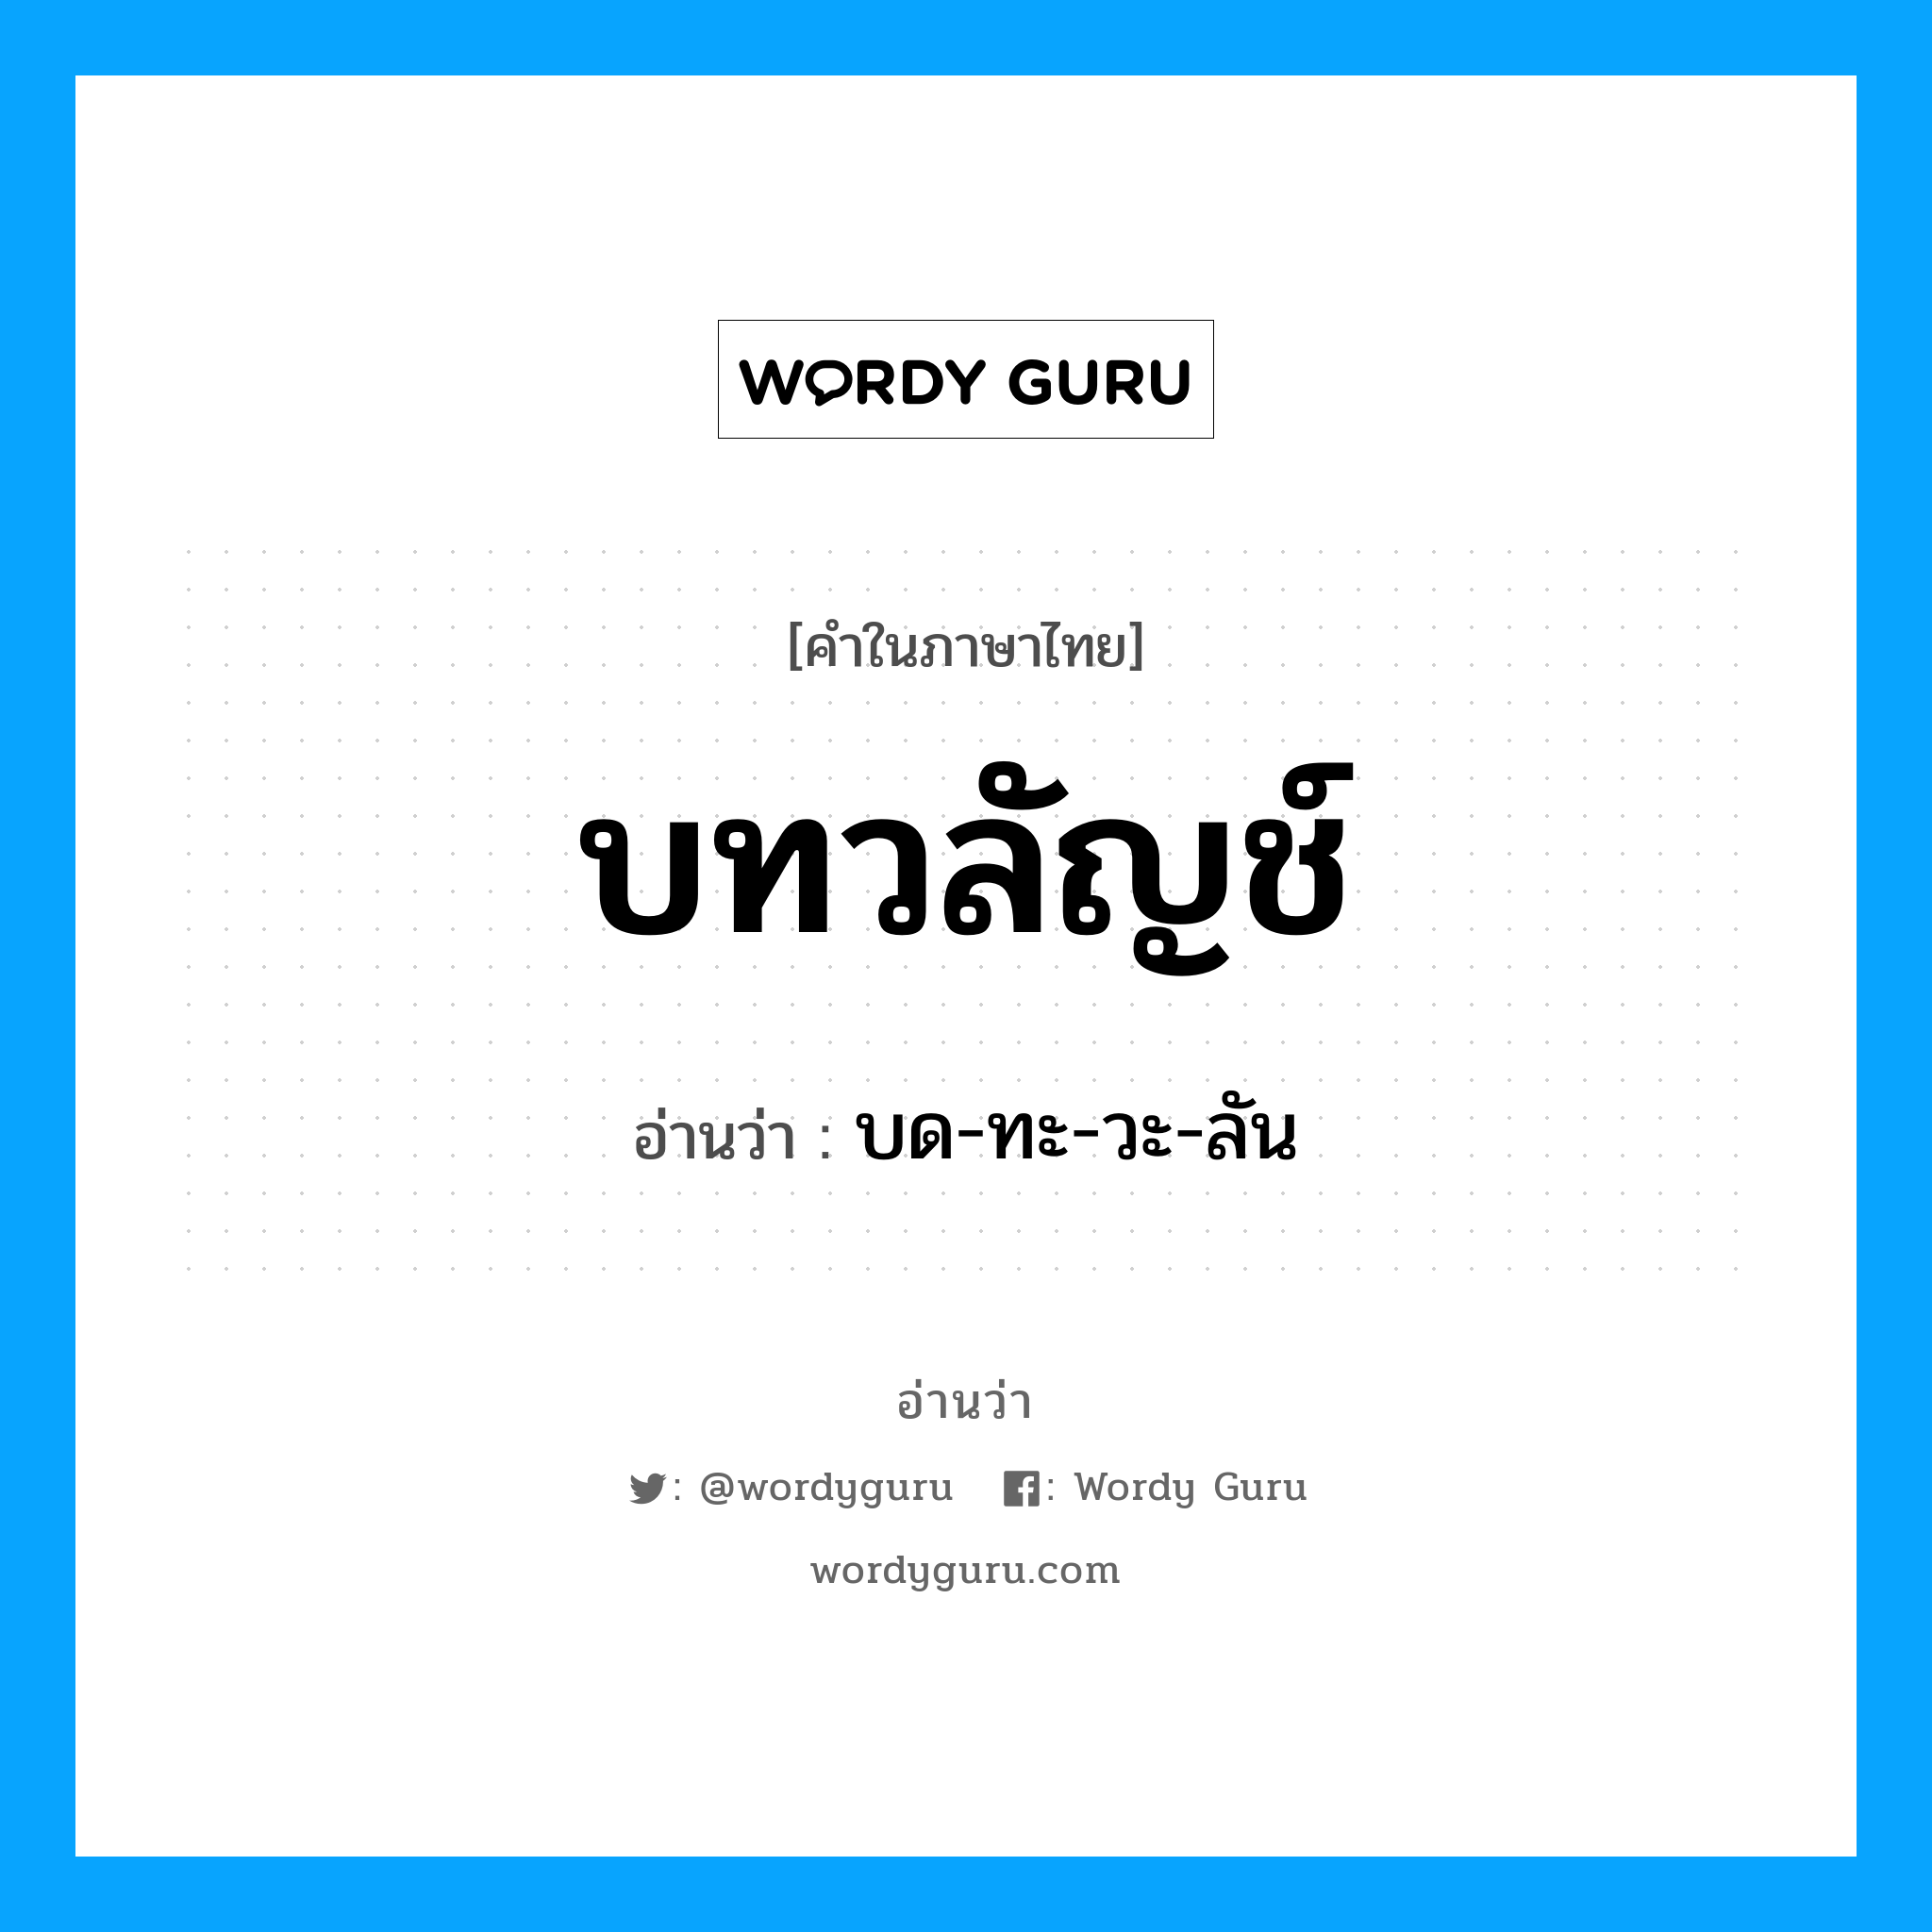 บด-ทะ-วะ-ลัน เป็นคำอ่านของคำไหน?, คำในภาษาไทย บด-ทะ-วะ-ลัน อ่านว่า บทวลัญช์